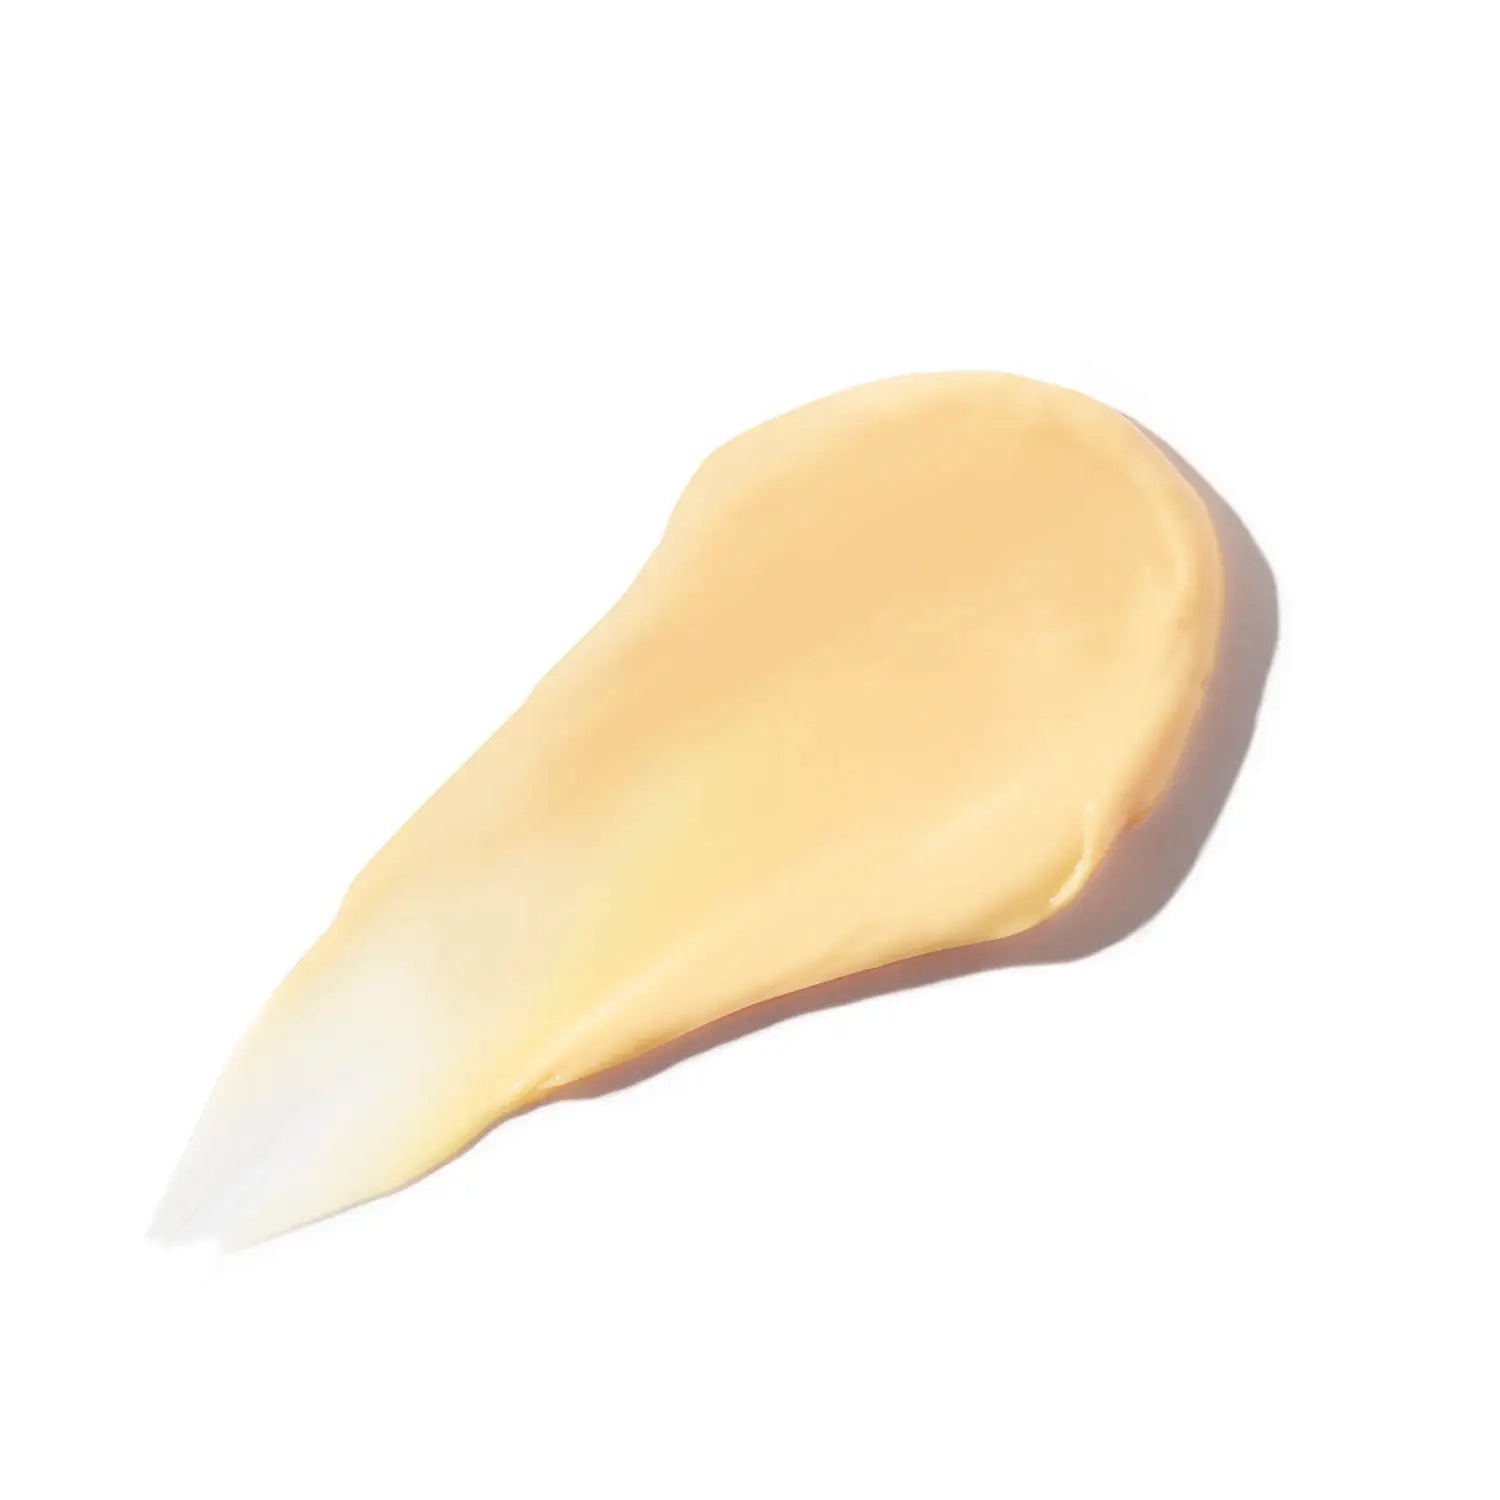 Christophe Robin Shade Variation Mask Golden Blonde